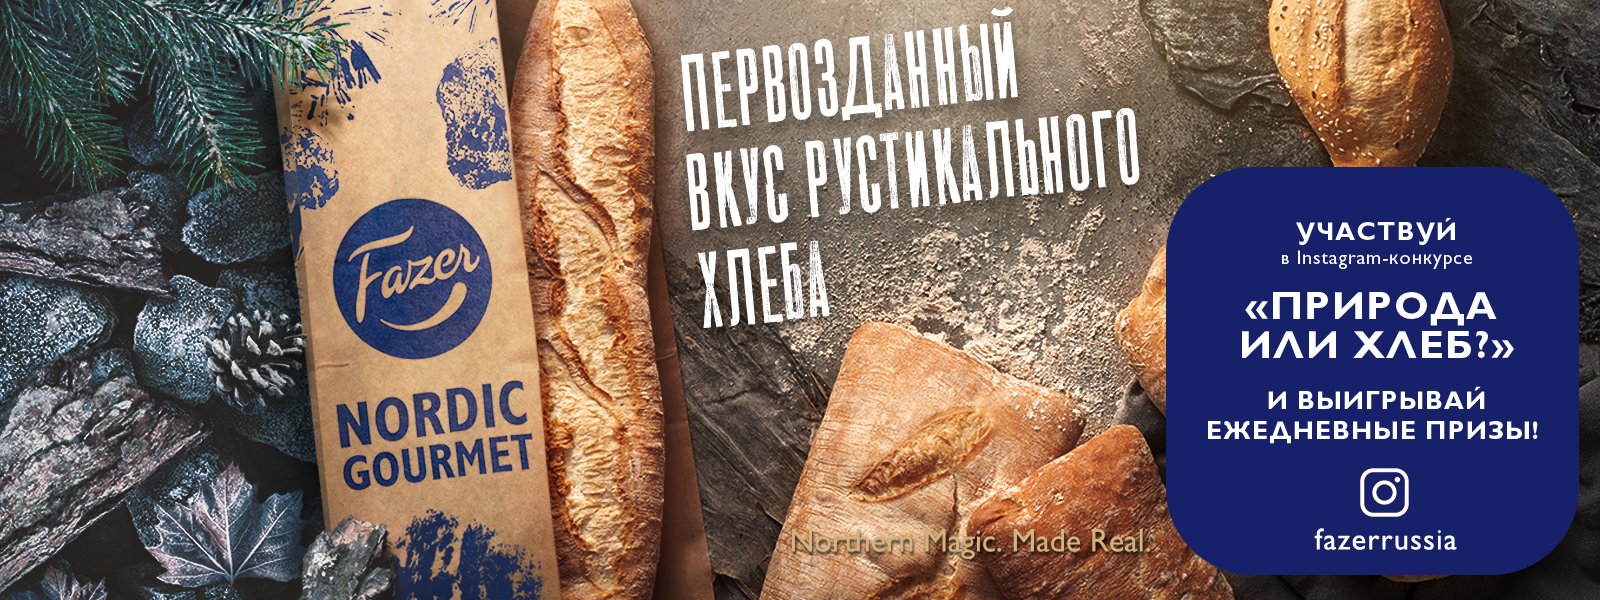 Рекламная акция Fazer «Fazer NORDIC GOURMET Природа или хлеб»